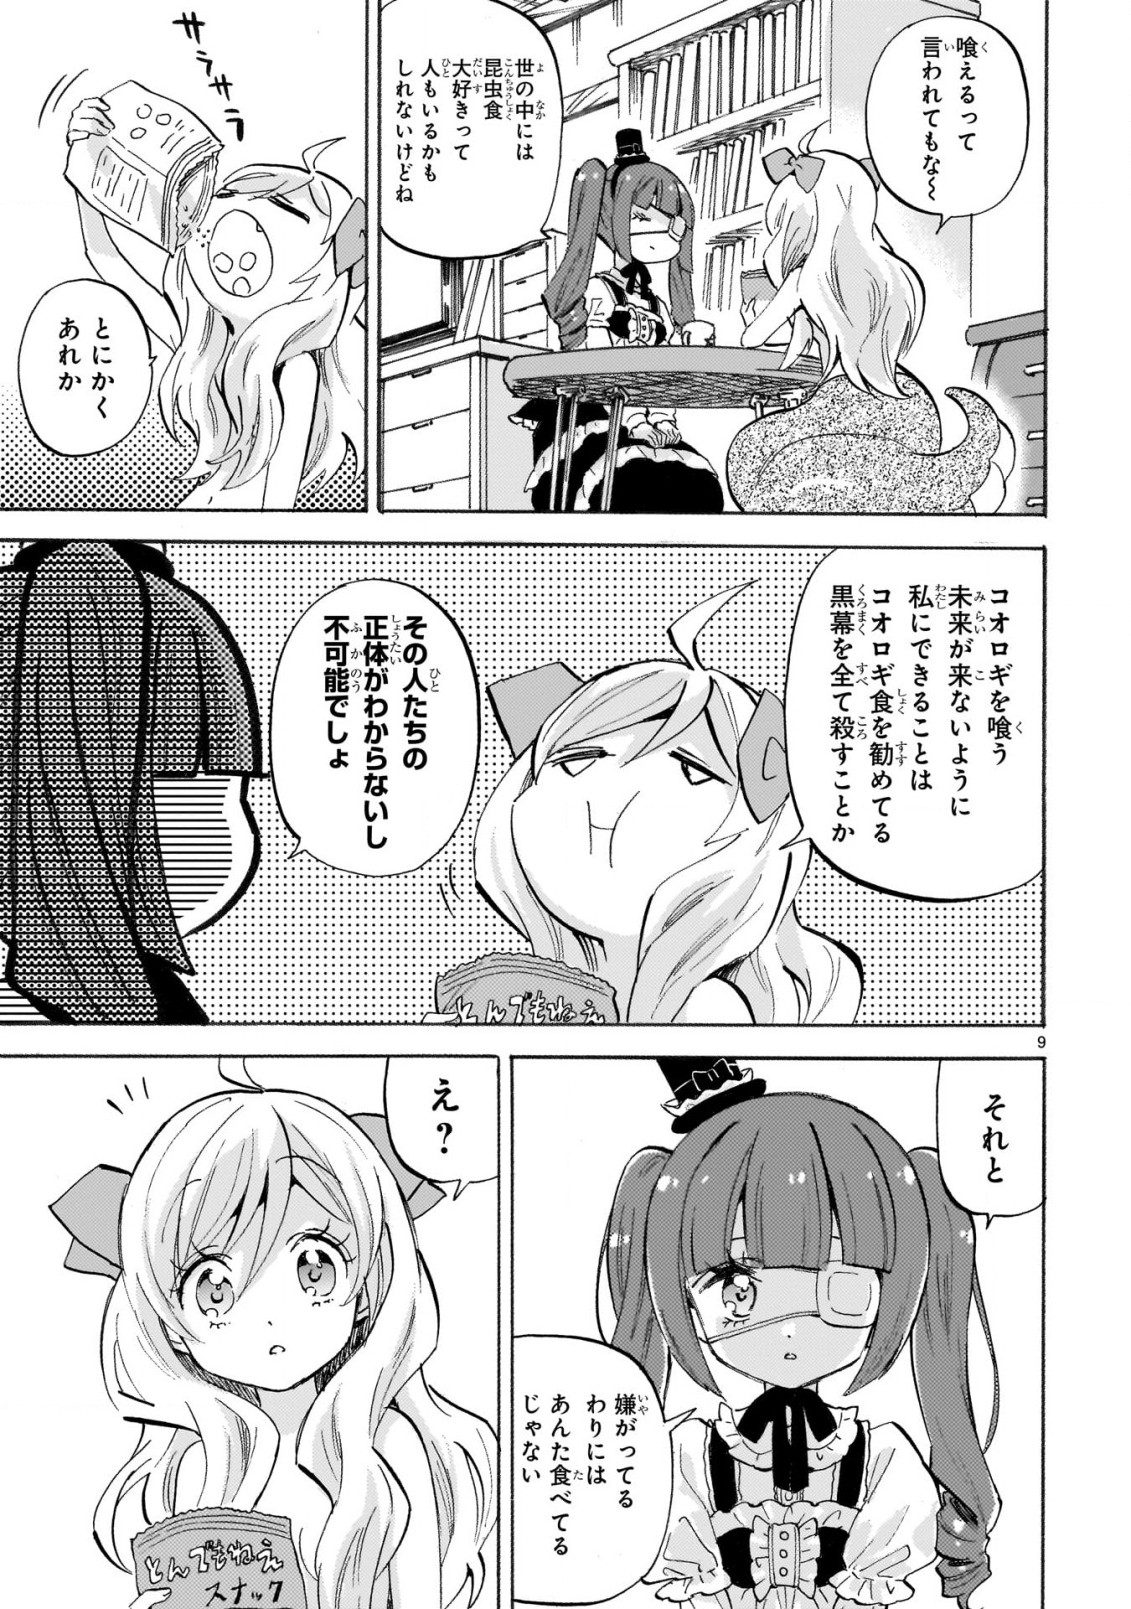 Jashin-chan Dropkick - Chapter 230 - Page 9